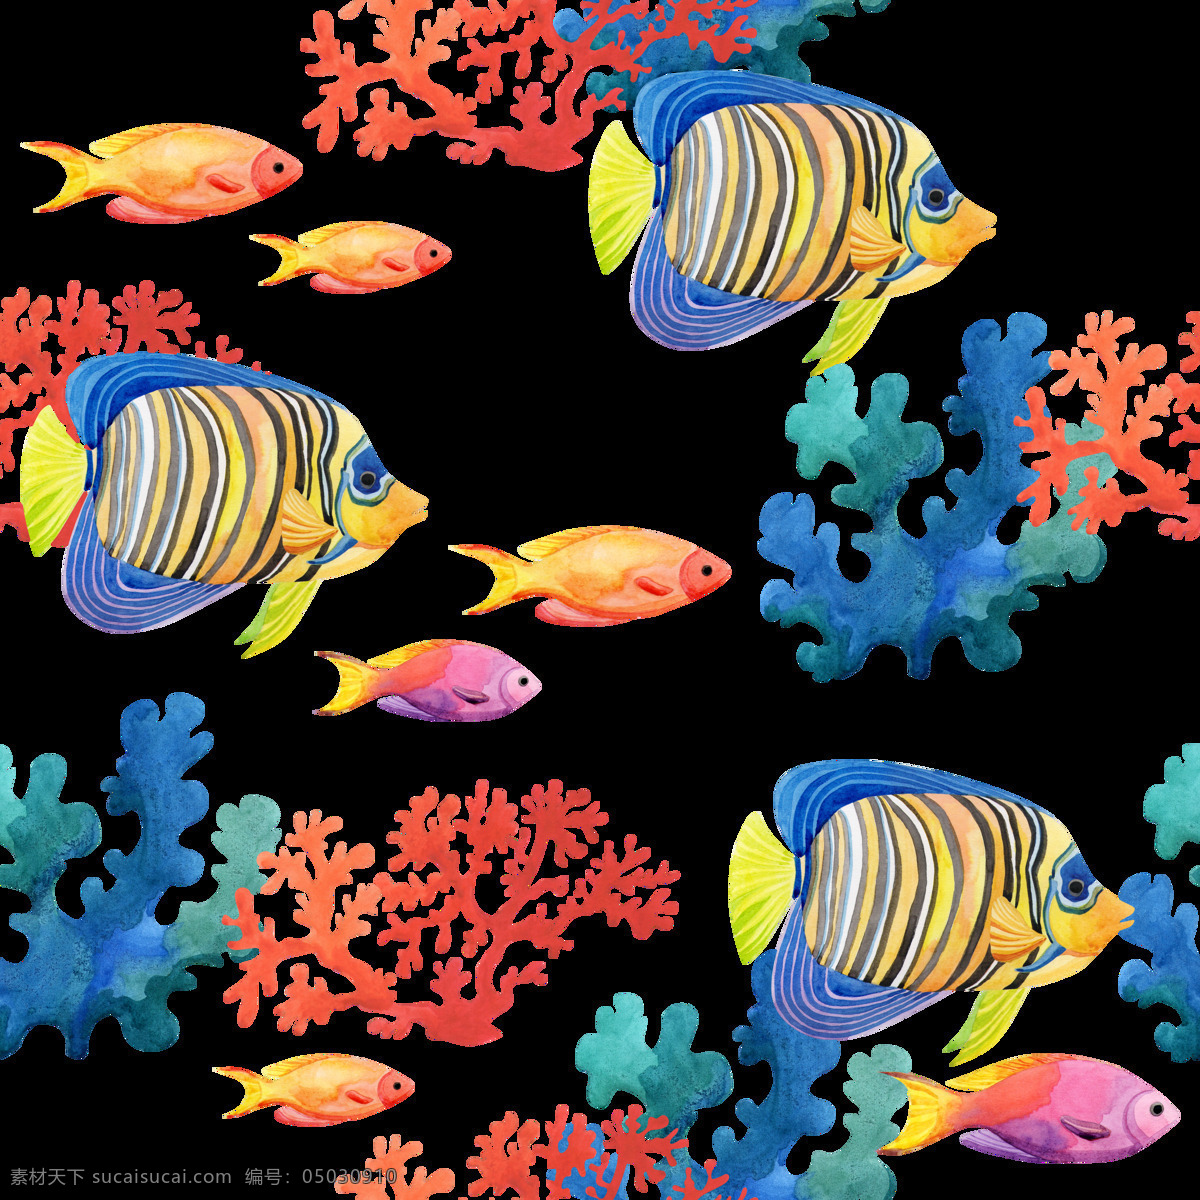 手绘 海底 世界 奇观 背景 图 透明 背景素材 观赏 海草 蓝色 免扣素材 热带鱼 珊瑚 透明素材 唯美 装饰图案